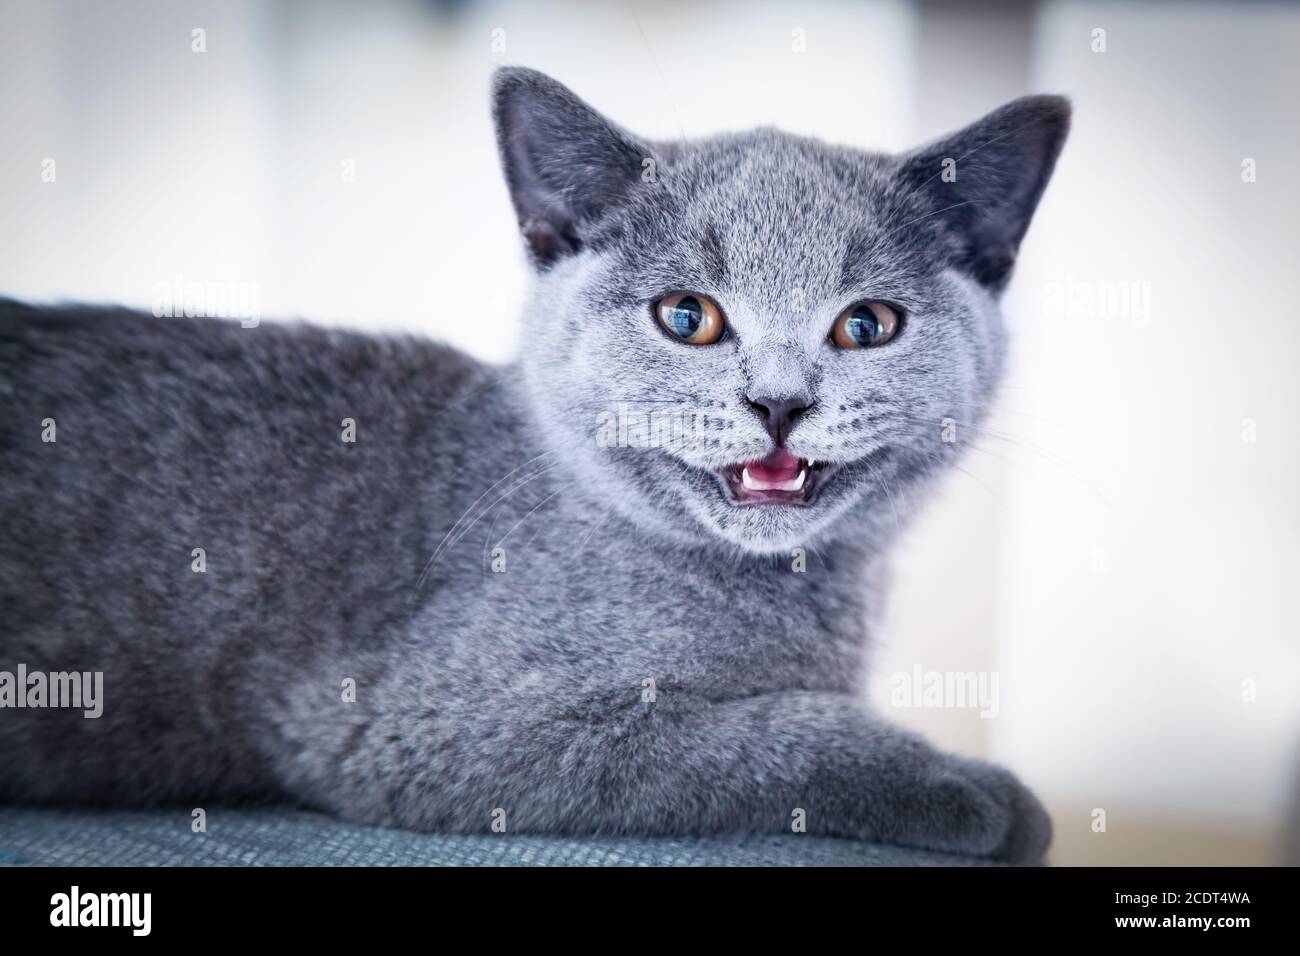 Junge nette Katze zeigt seine winzigen Zähne. Das Britische Kurzhaar Kätzchen mit blaugrauem Fell Stockfoto